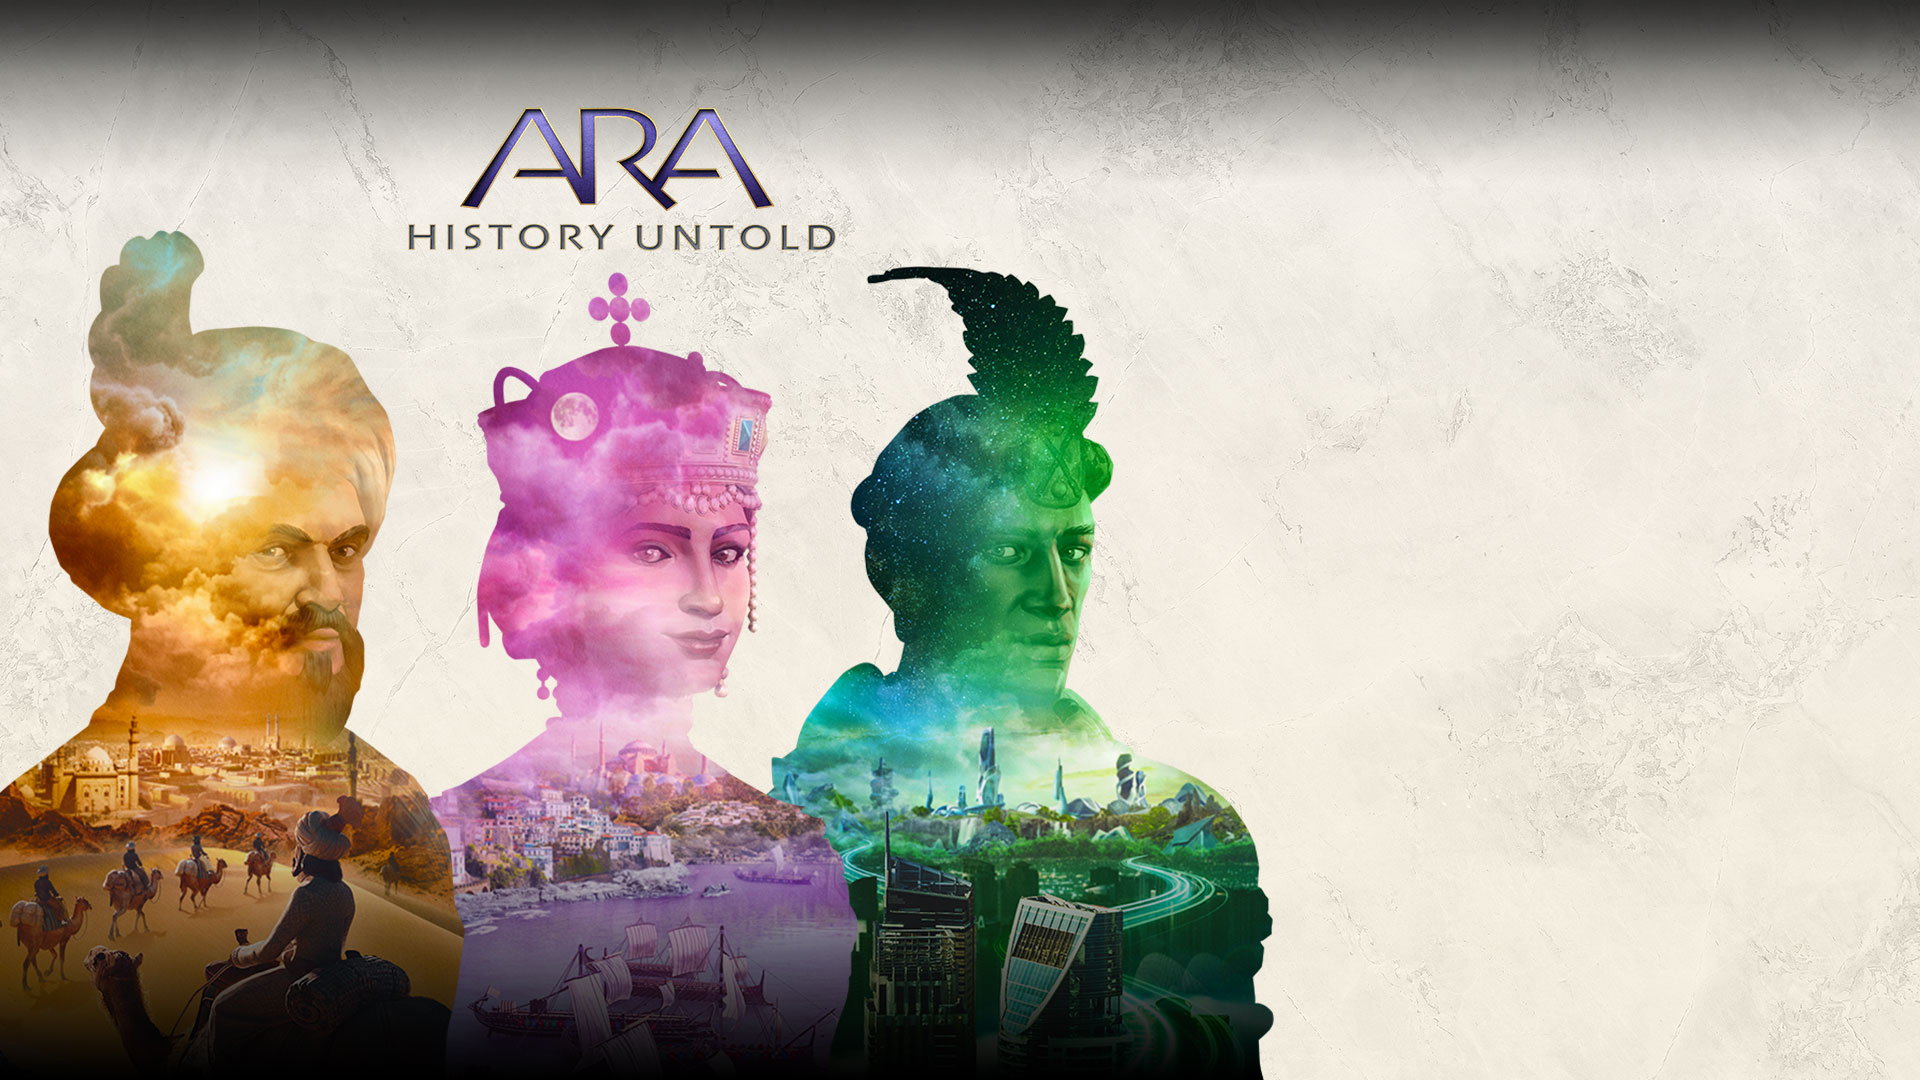 Ara: History Untold. Tre transparenta personer med scener från olika städer som utspelar sig inom siluetten.